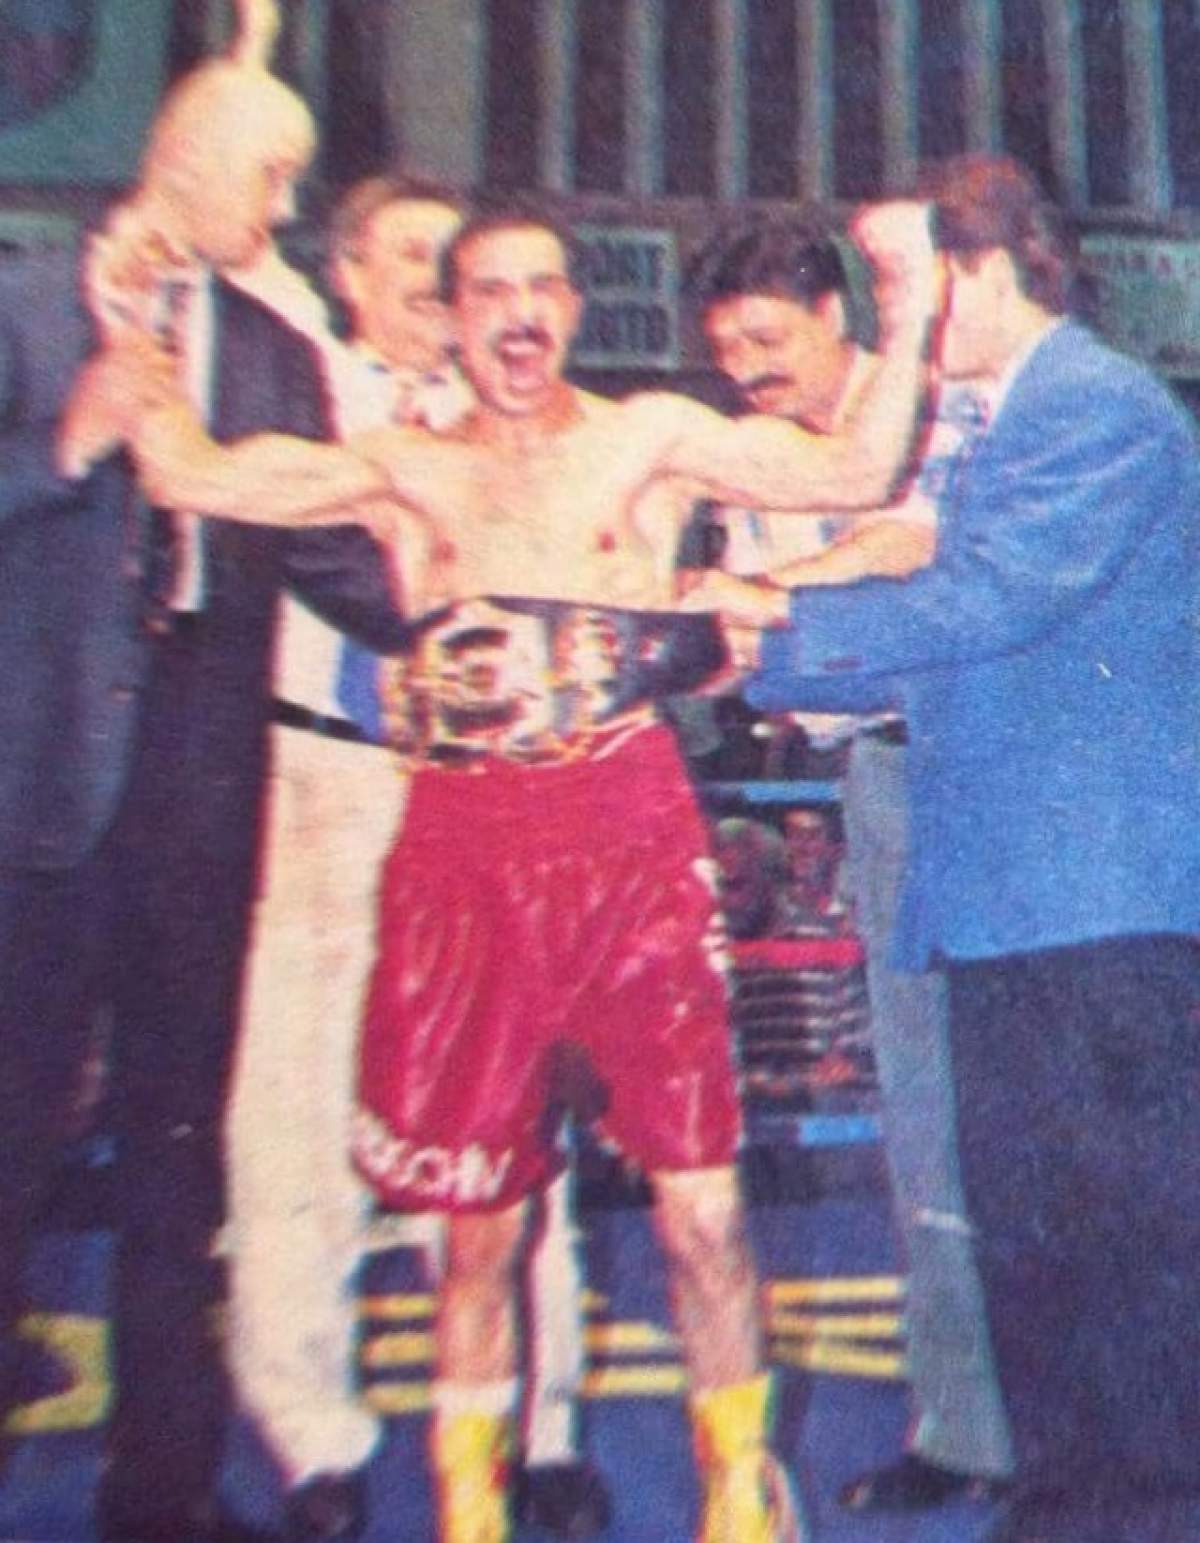 Poate ar fi trebuit să renunţe la mănuşi... Primul român campion mondial la box, prins în timp ce fura din buzunare!